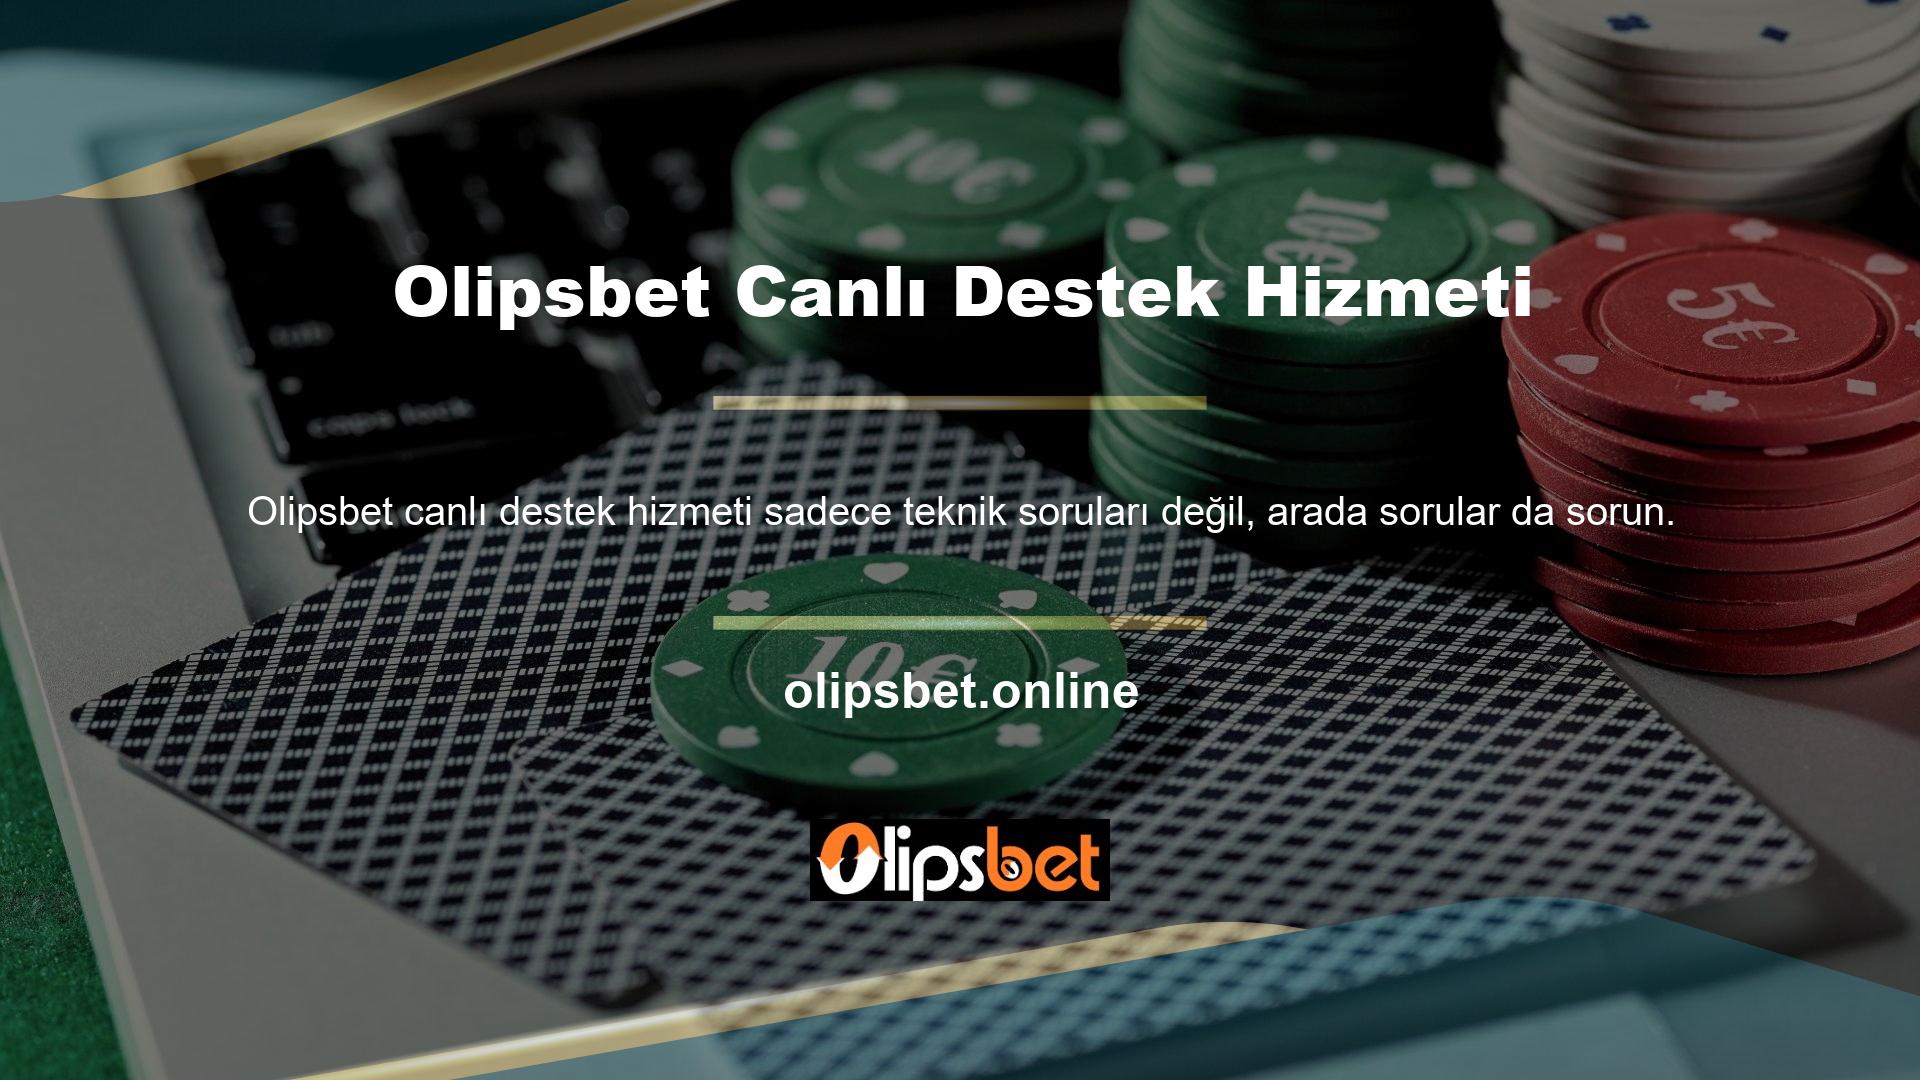 Olipsbet, 7/24 canlı destek hizmeti sunmakta ve çözüm sağlamak için özel personel sunmaktadır